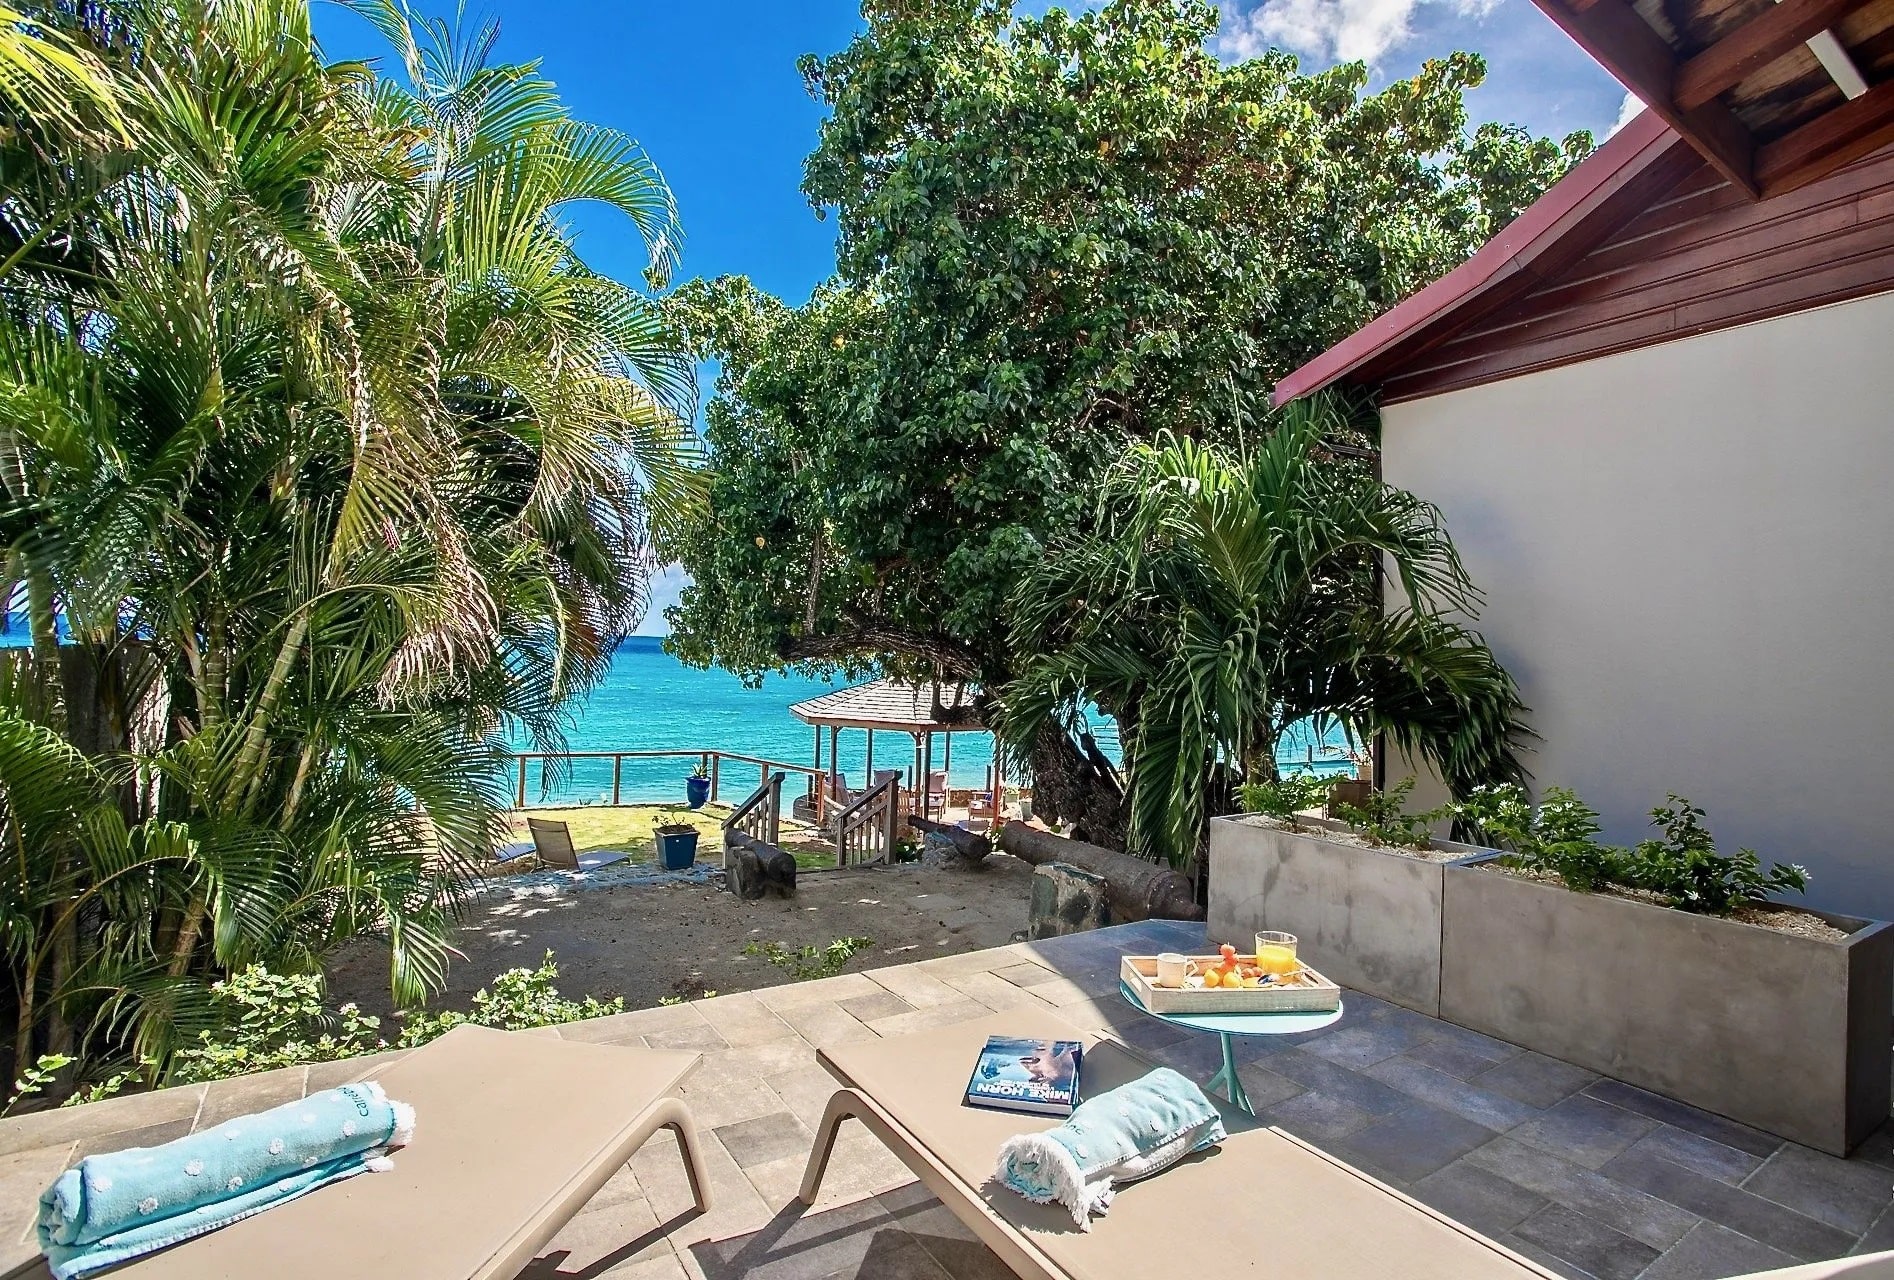 Location villa de luxe en Martinique. Vivez une expérience inoubliable à La Sirène du Diamant Martinique